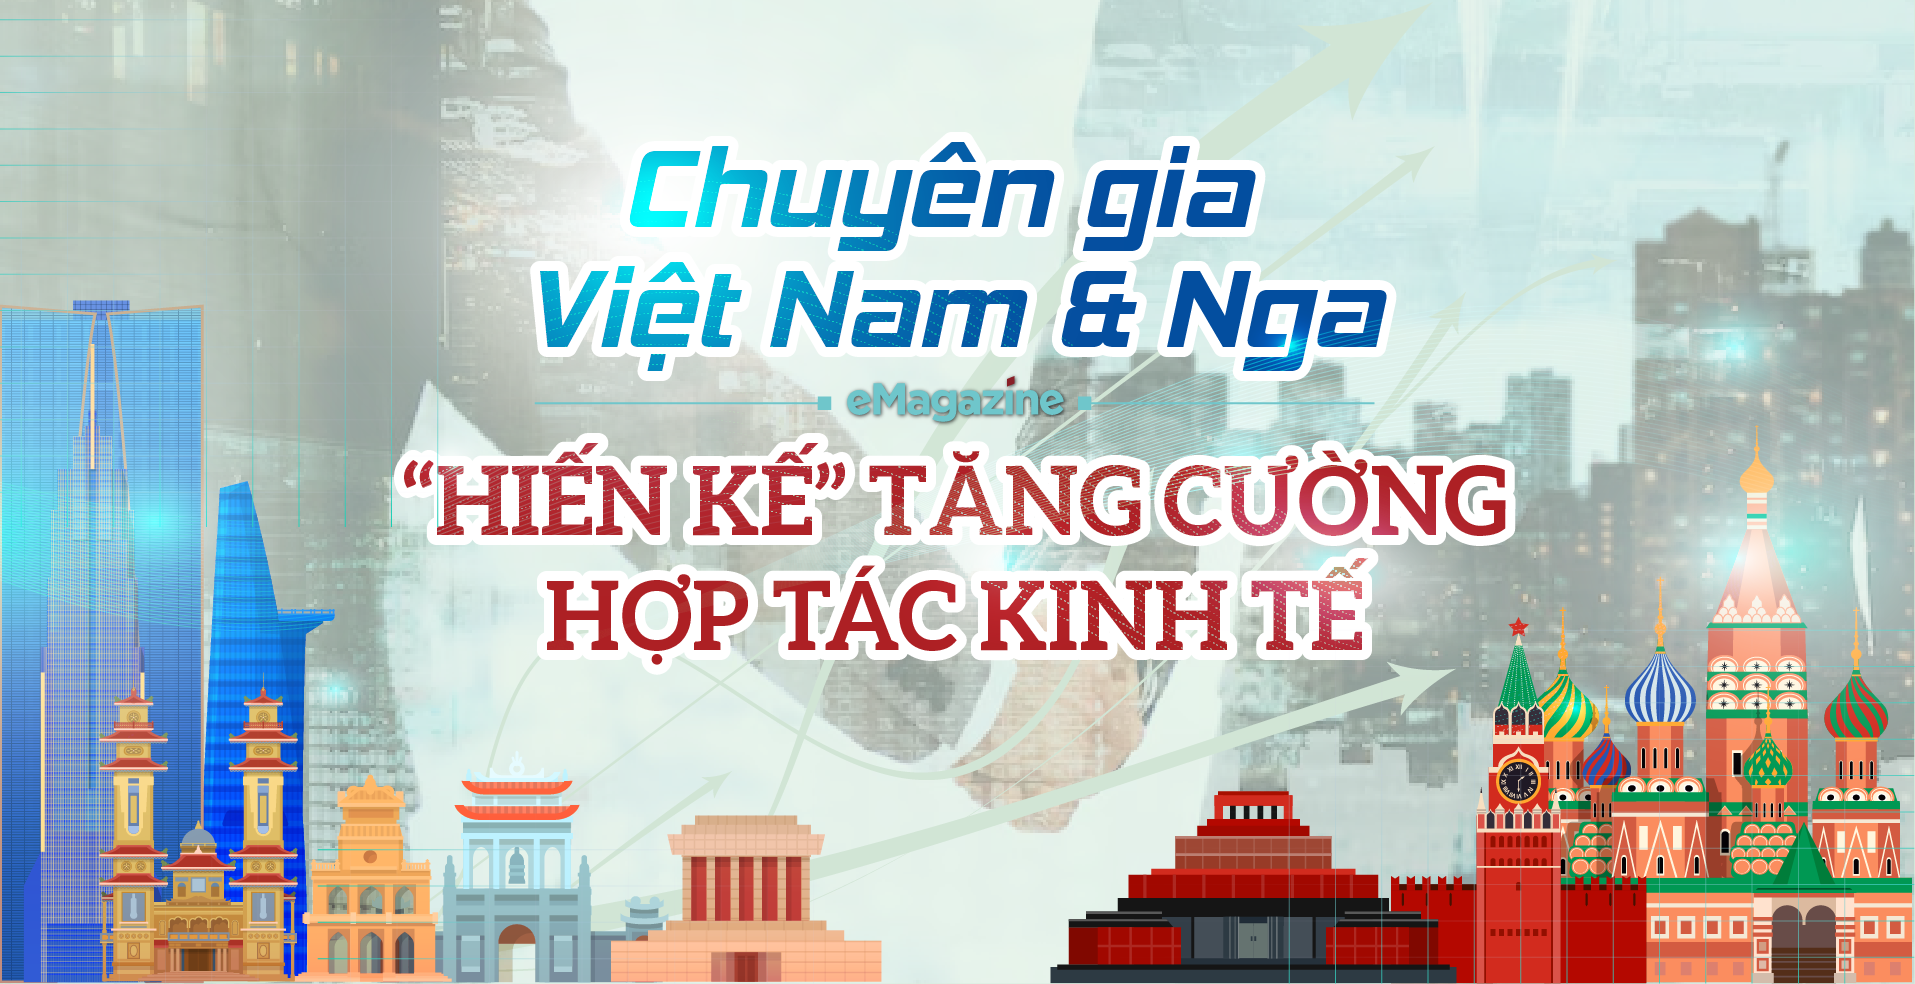 Chuyên gia Việt Nam và Nga “hiến kế” tăng cường hợp tác kinh tế - Ảnh 1